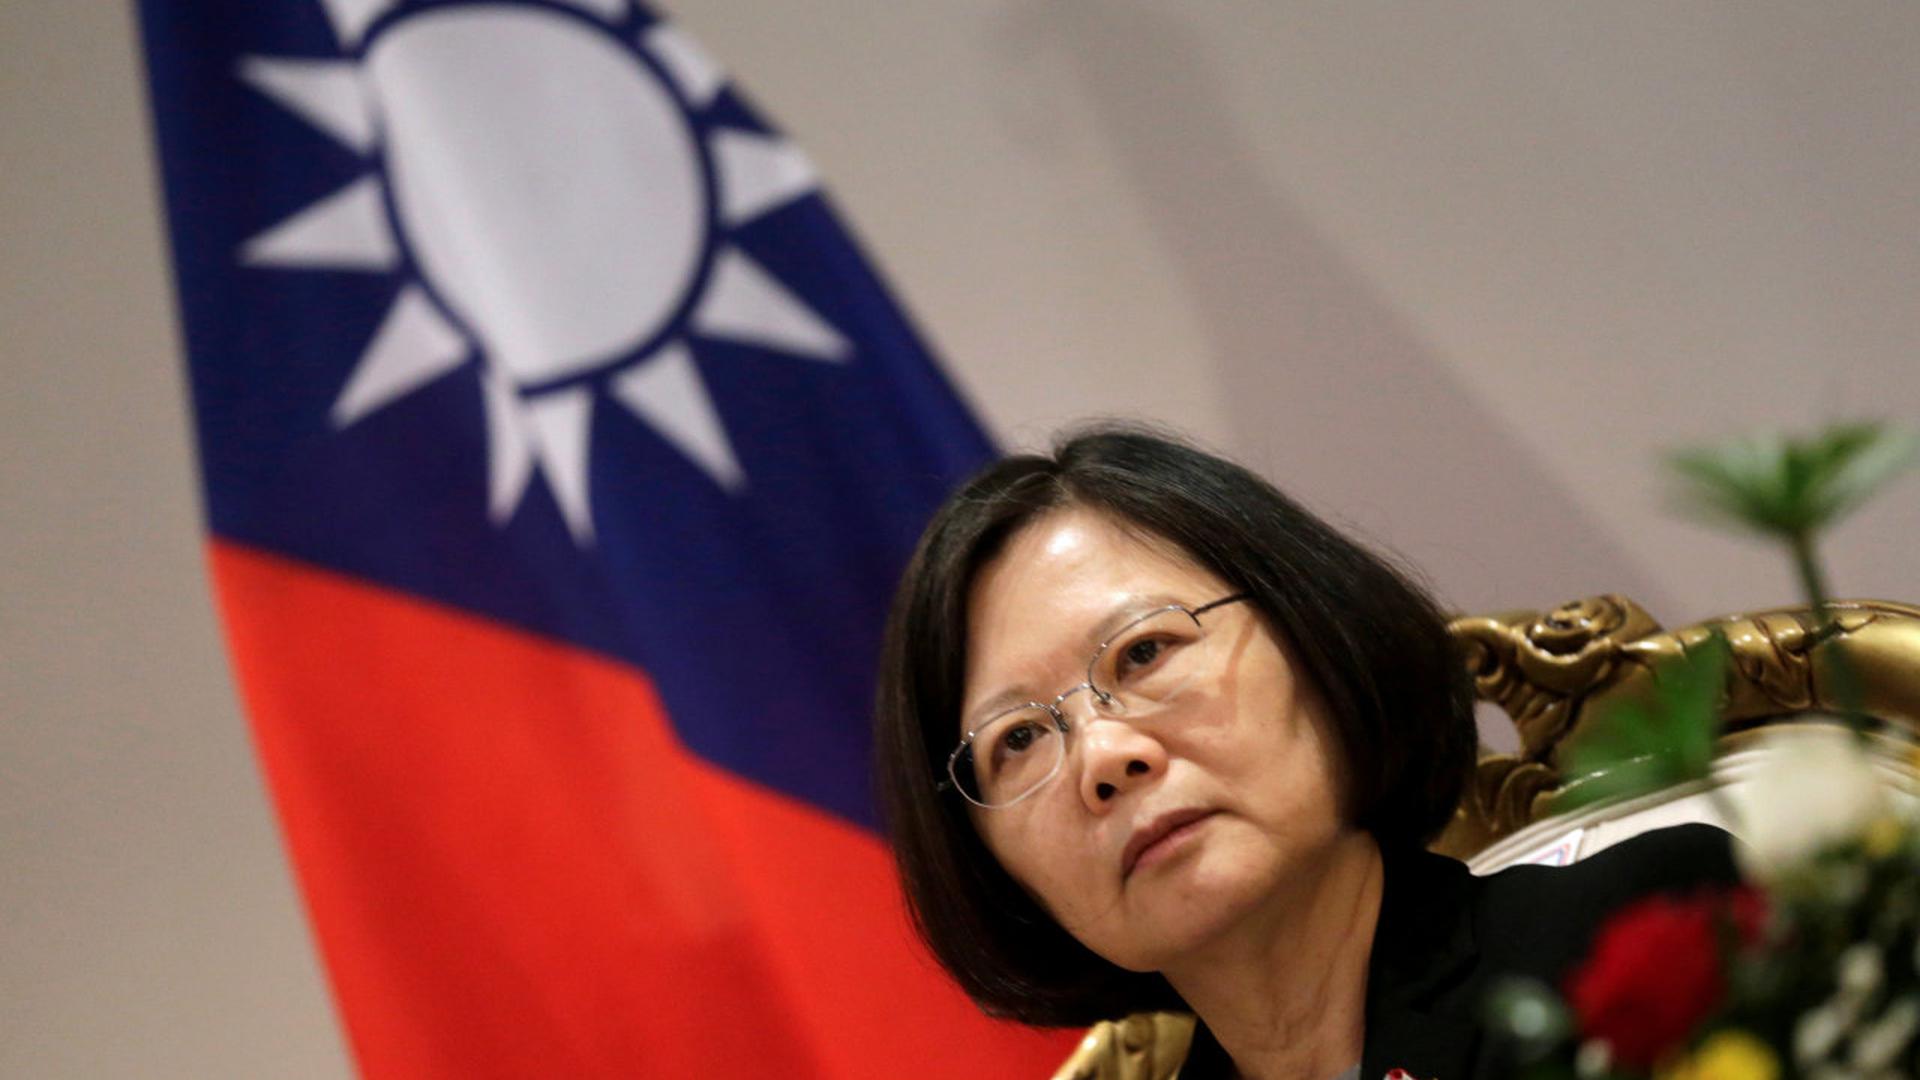 L'appel téléphonique, vendredi, de la présidente taïwanaise Tsai Ing-wen à Donald Trump marque une rupture spectaculaire avec 40 ans de diplomatie américaine. 